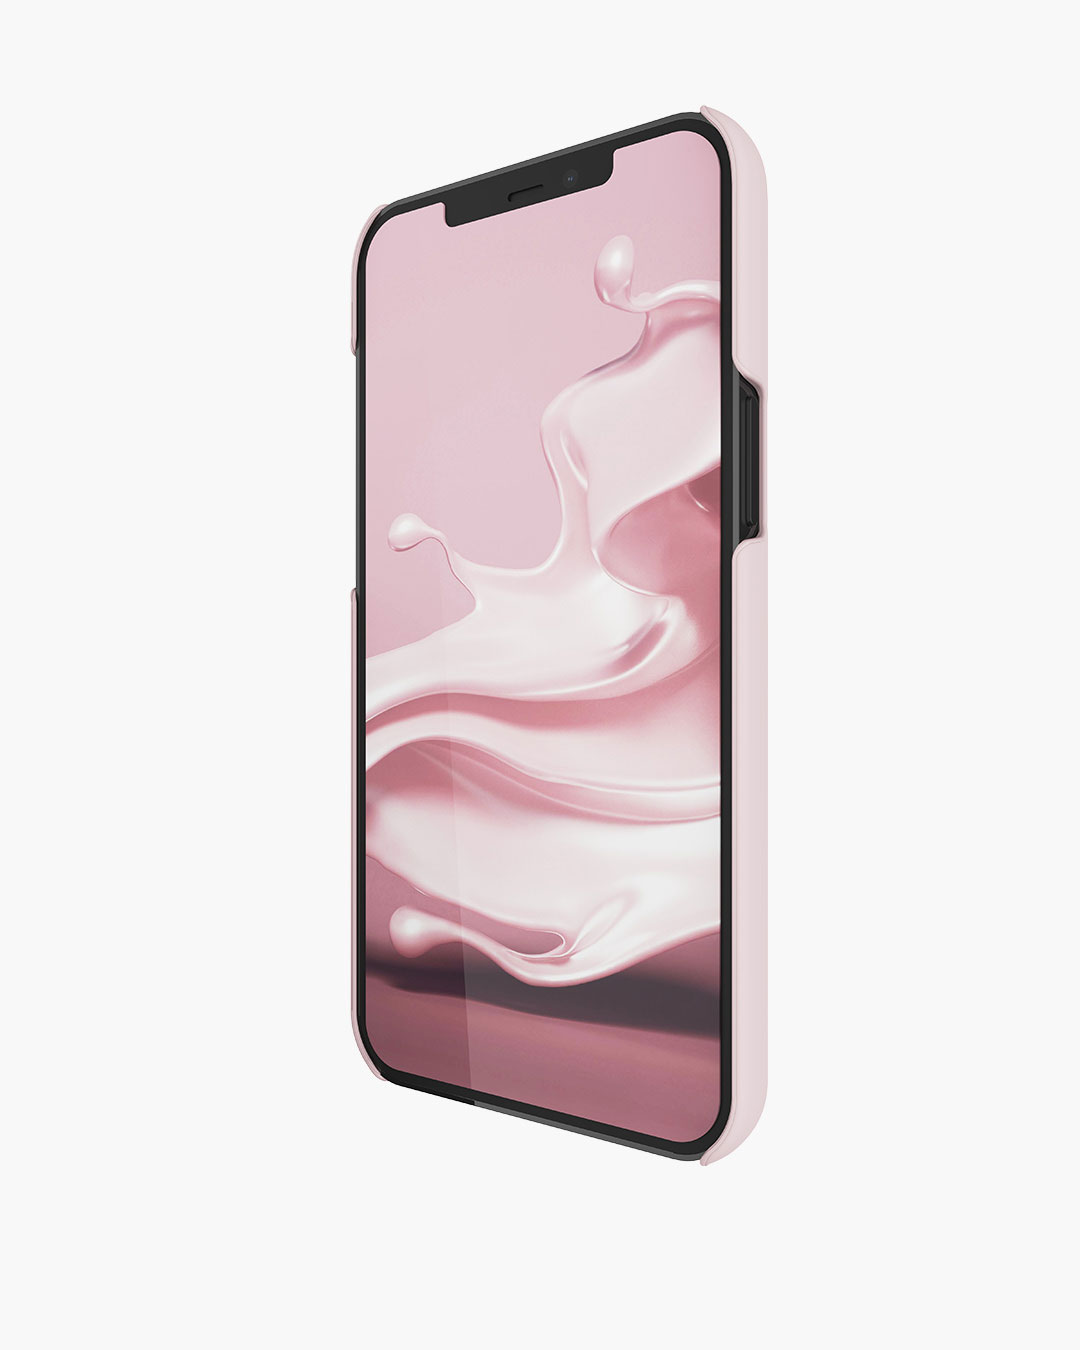 Fresh 'n Rebel - Phone Case iPhone 12 Pro Max - Smokey Pink